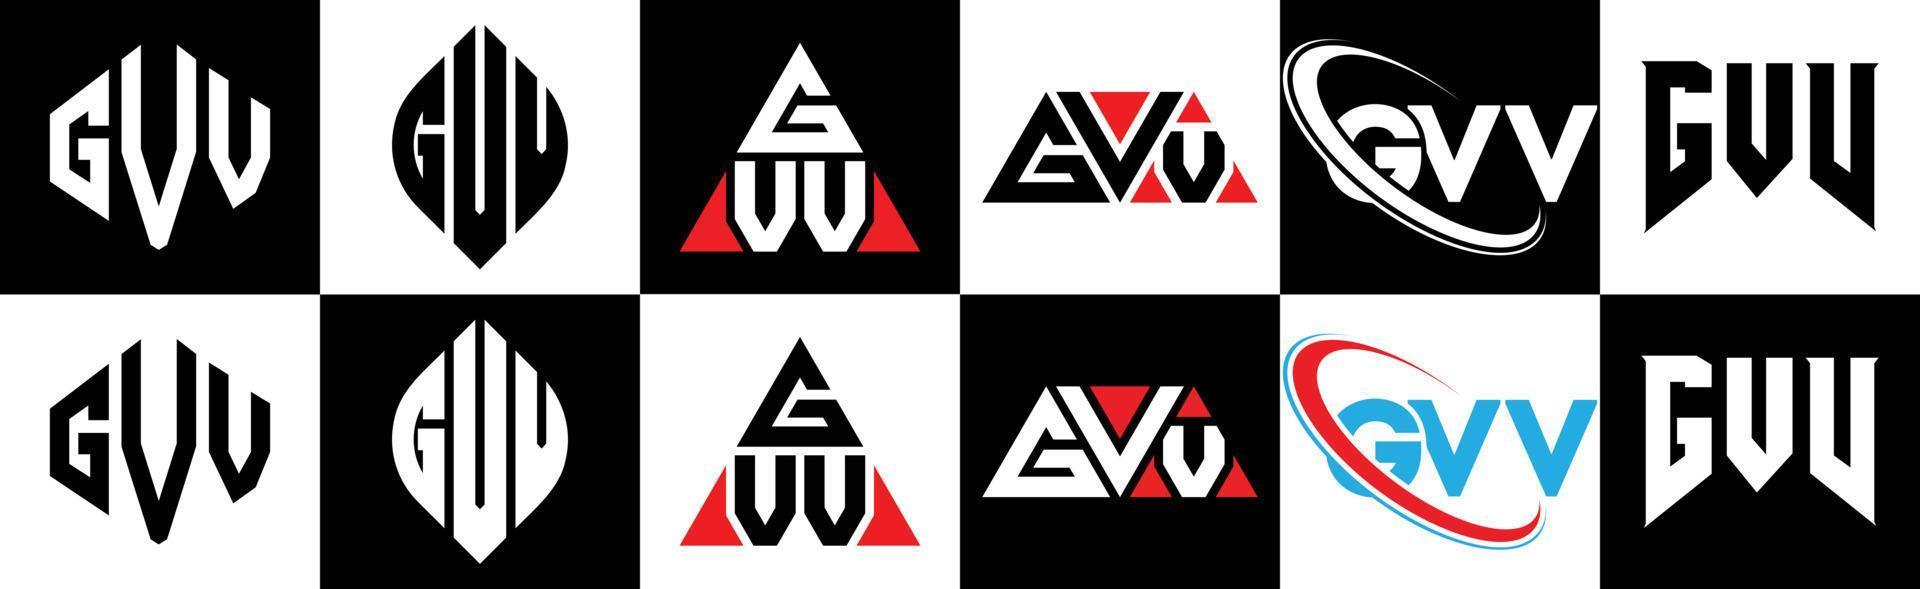 gvv-Buchstaben-Logo-Design in sechs Stilen. gvv polygon, kreis, dreieck, sechseck, flacher und einfacher stil mit schwarz-weißem buchstabenlogo in einer zeichenfläche. gvv minimalistisches und klassisches Logo vektor